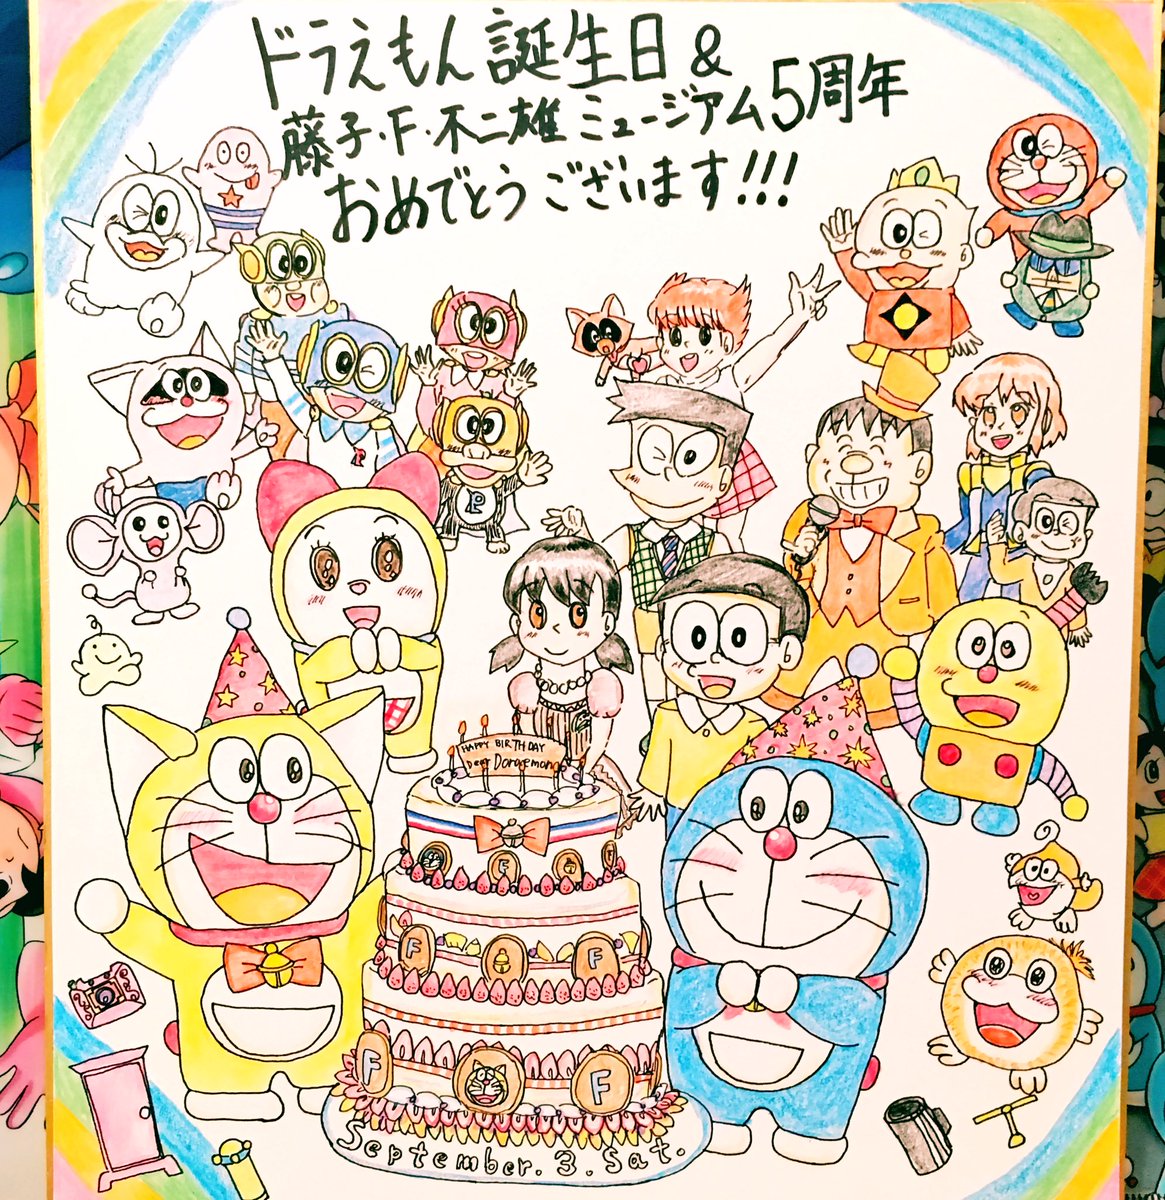 توییتر しゅん松 در توییتر ドラえもん 改めて お誕生日おめでとう 今年は色紙イラストとちゃんりお 旅ドラの思い出写真で御祝い 来年のわさドラ映画やこれからの藤子キャラ達の活躍に期待です ドラえもん生誕祭 Doraemon 9月3日 T Co